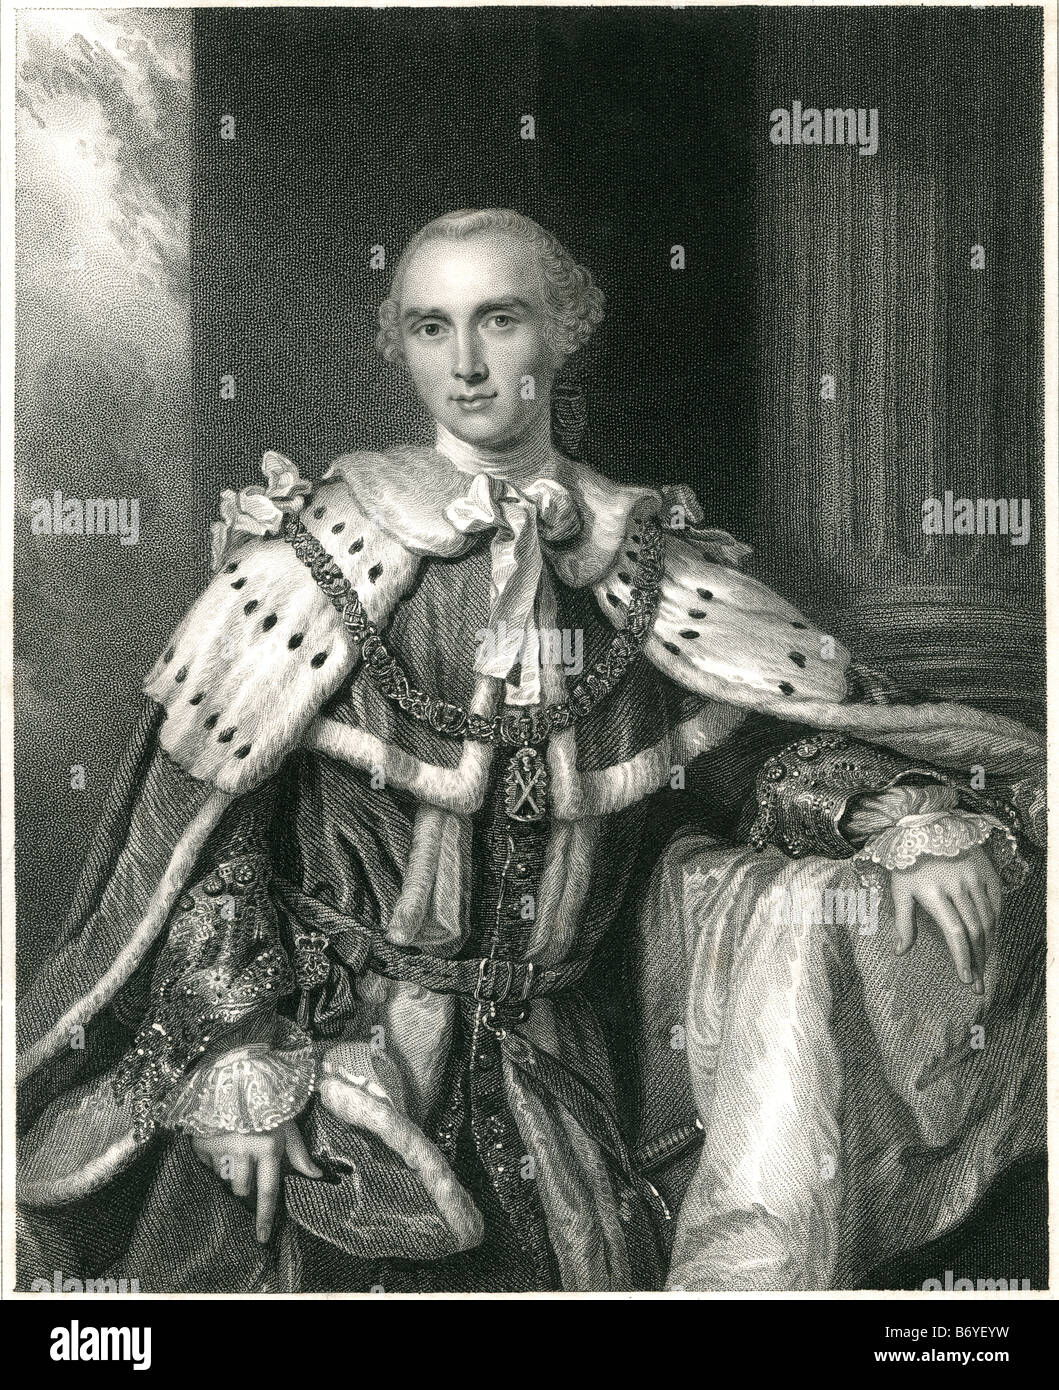 John Stuart, 3 comte de Bute, KG, PC 25 mai 1713 - 10 mars 1792 le titre de Lord Mount Stuart avant 1723 était un noble écossais Banque D'Images